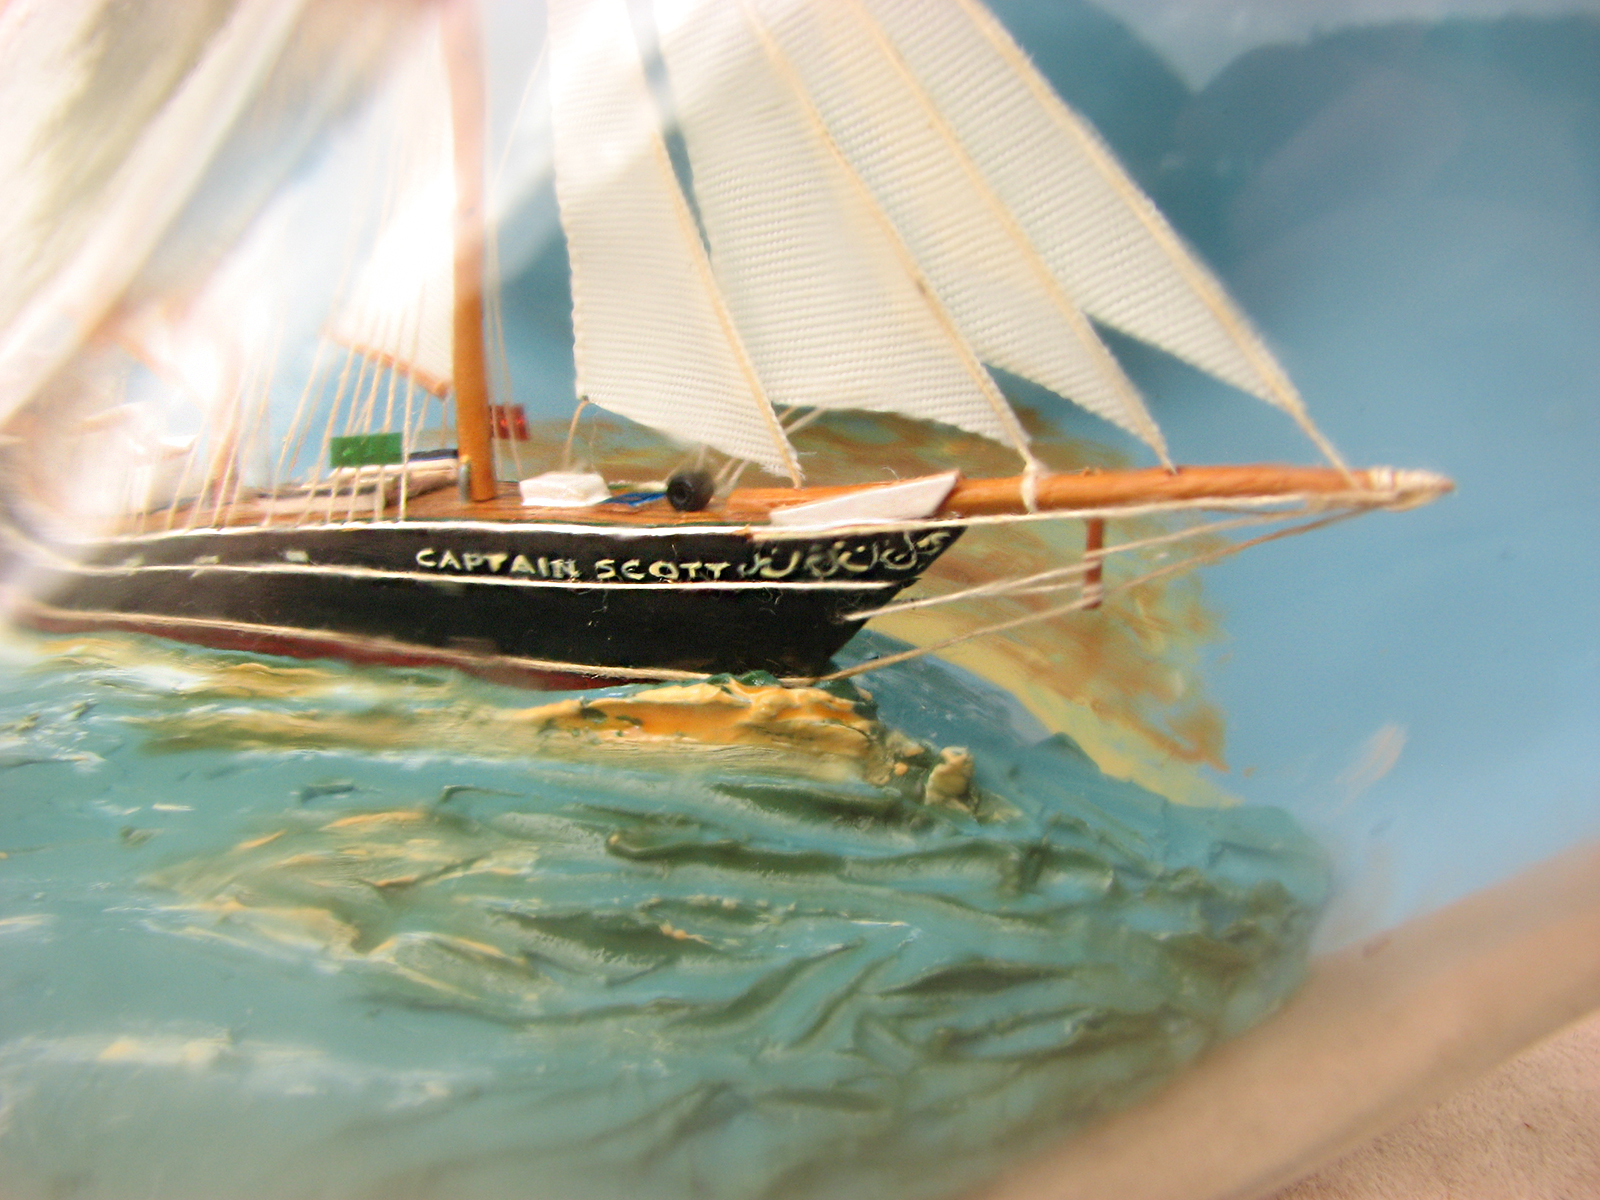 Model of the Captain Scott adventure schooner in a 1970's Haig whisky bottle